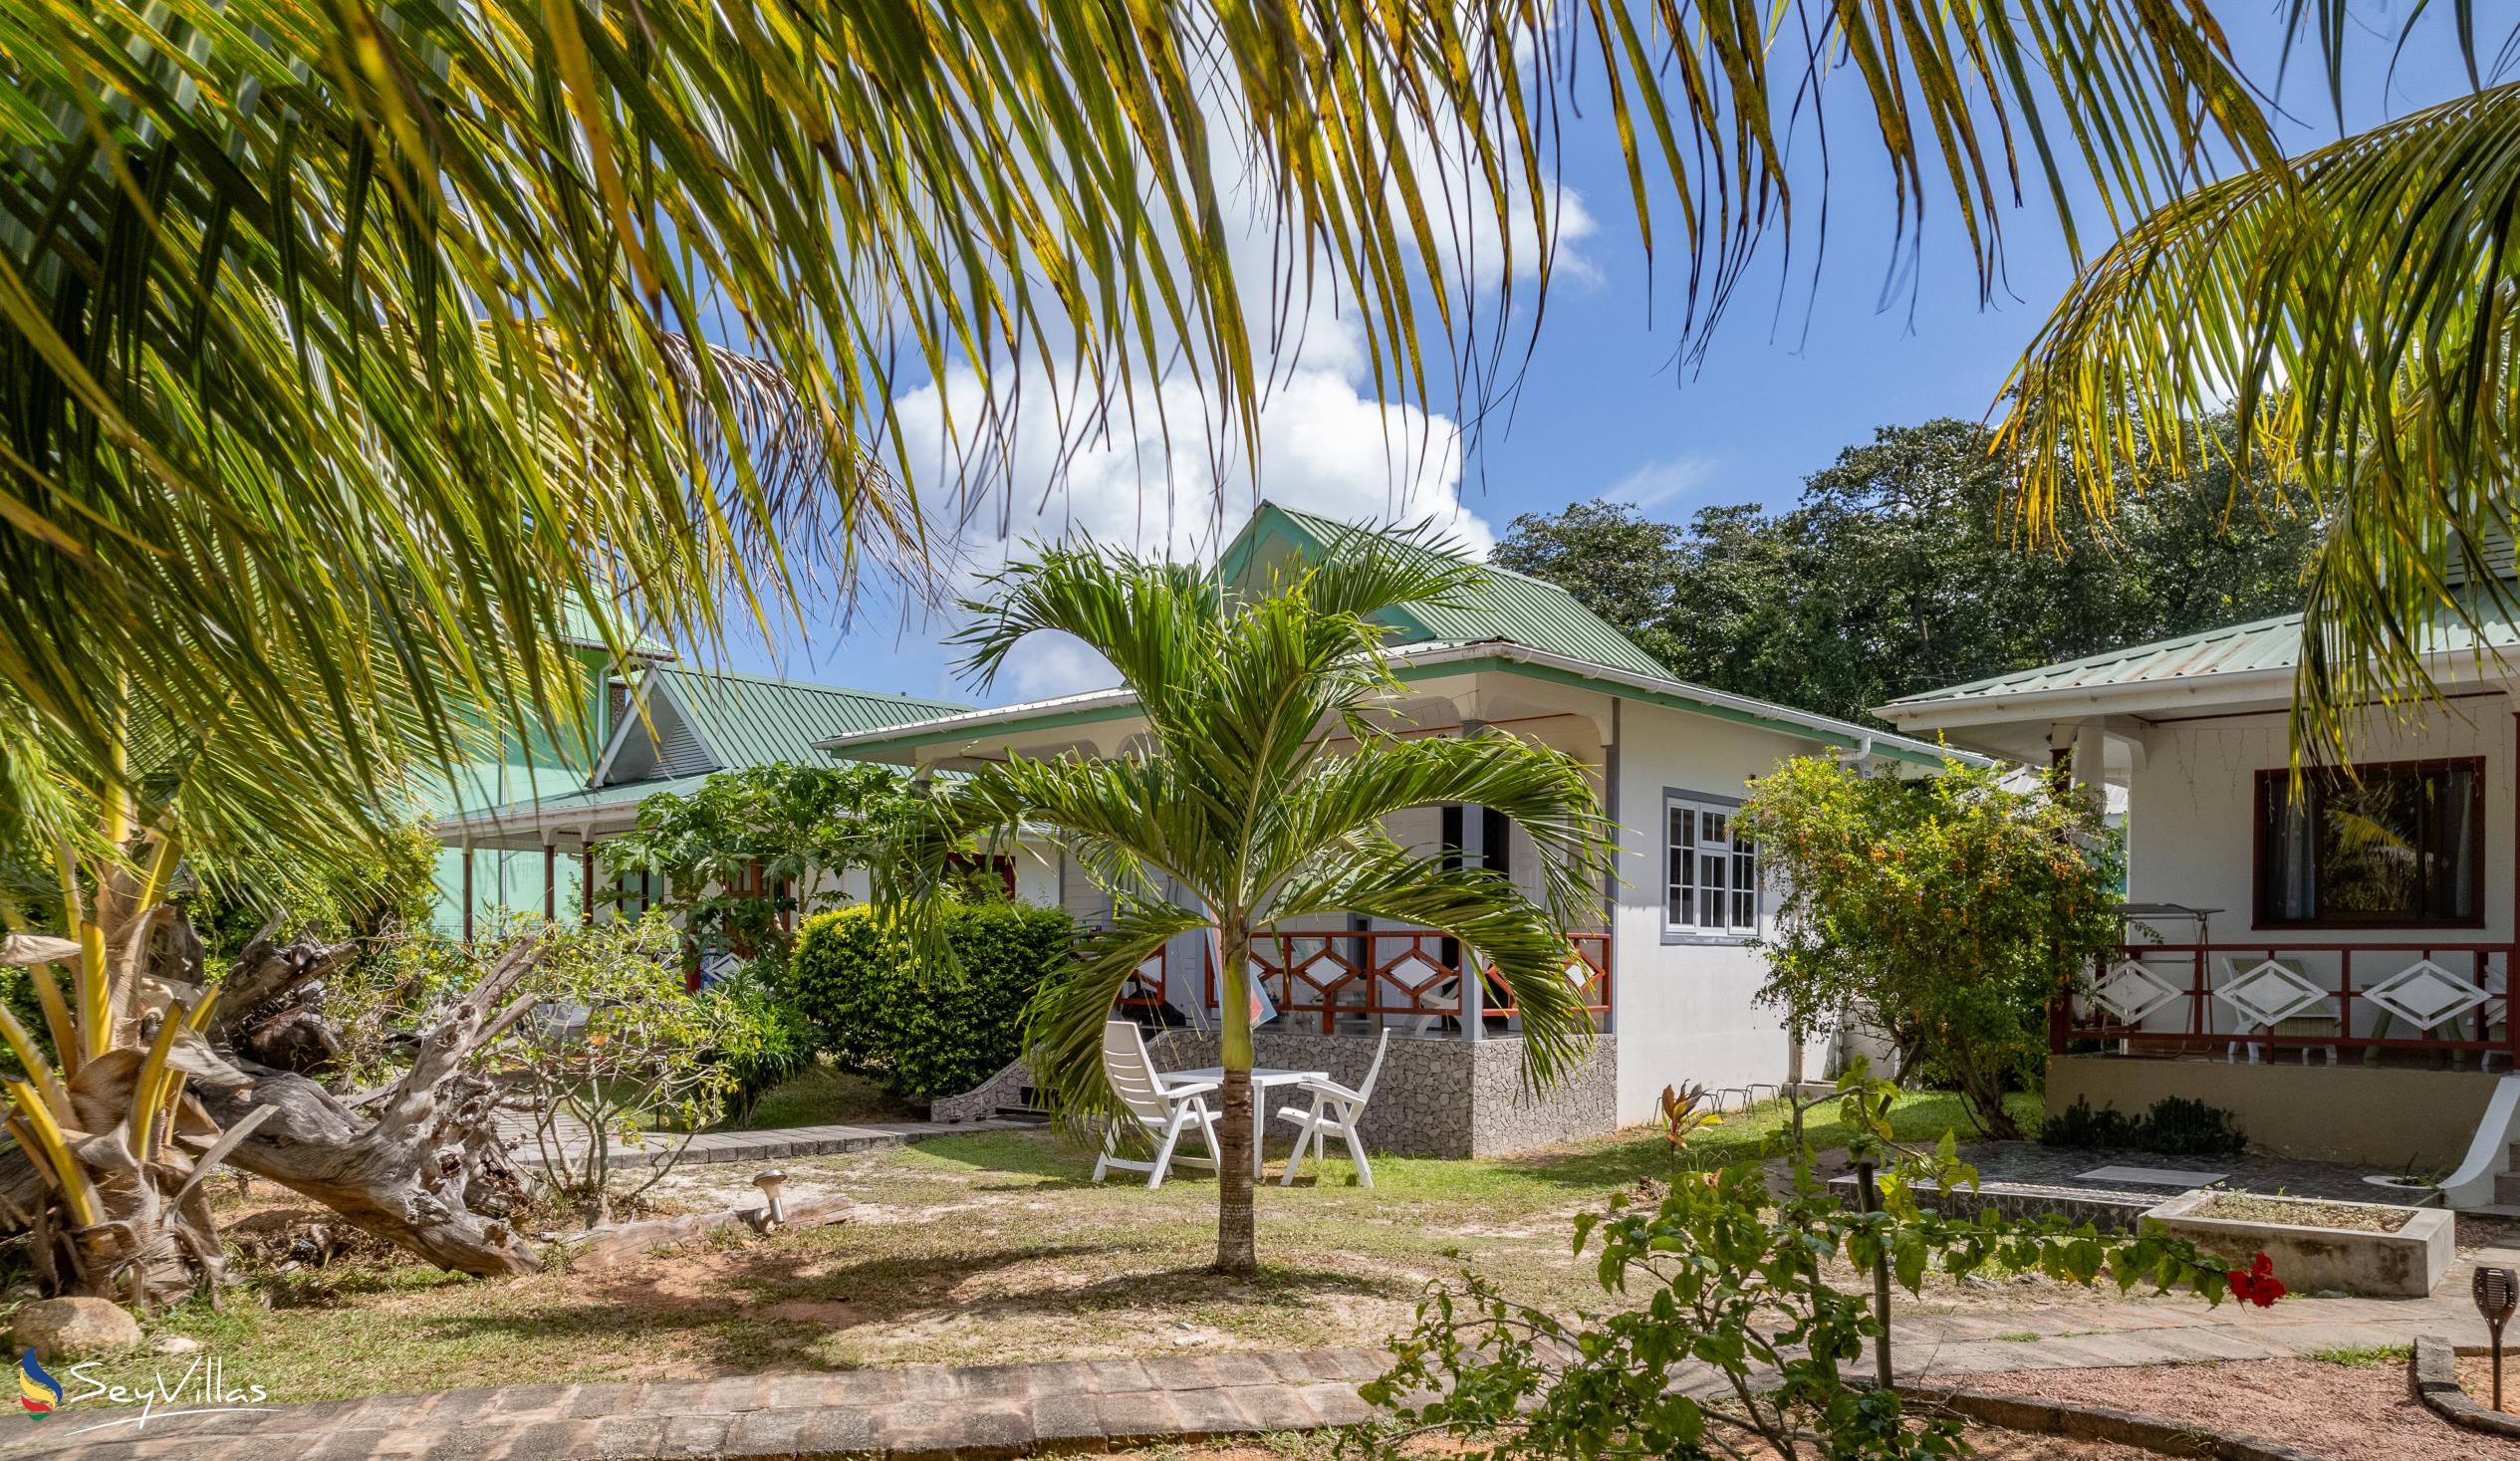 Foto 16: Agnes Cottage - Aussenbereich - La Digue (Seychellen)